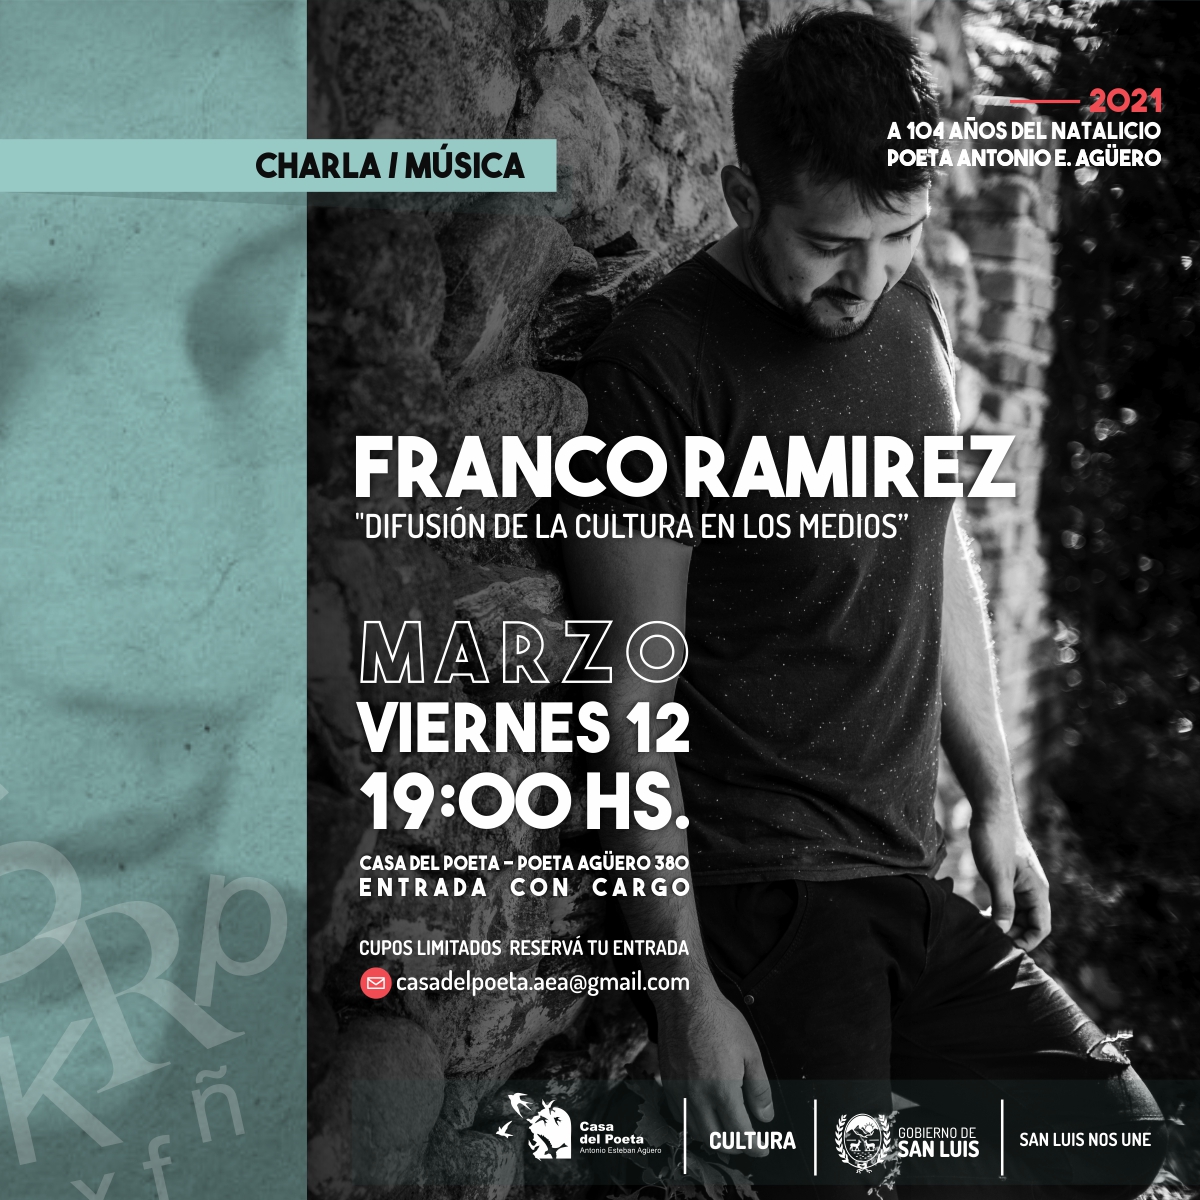 Franco Ramírez se presenta este viernes en el auditorio de La Casa del Poeta